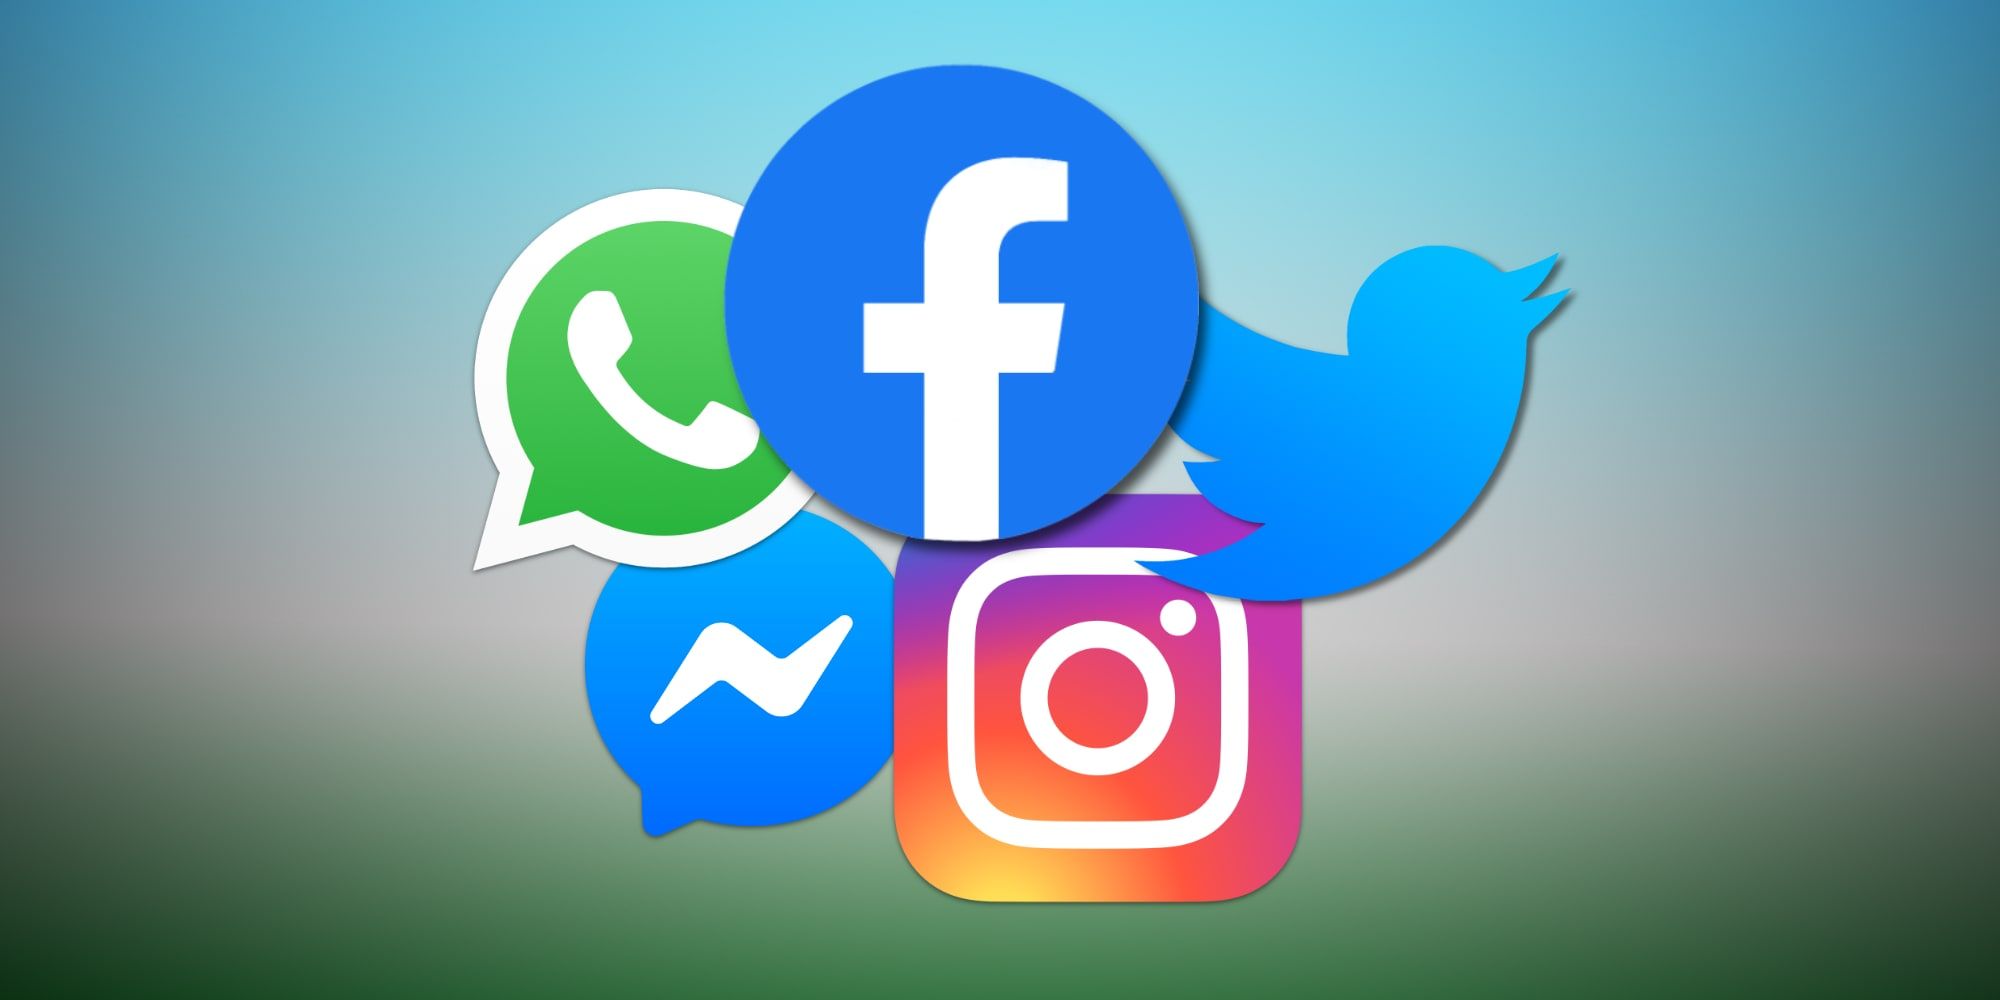 Facebook Instagram Messenger WhatsApp Twitter Logos